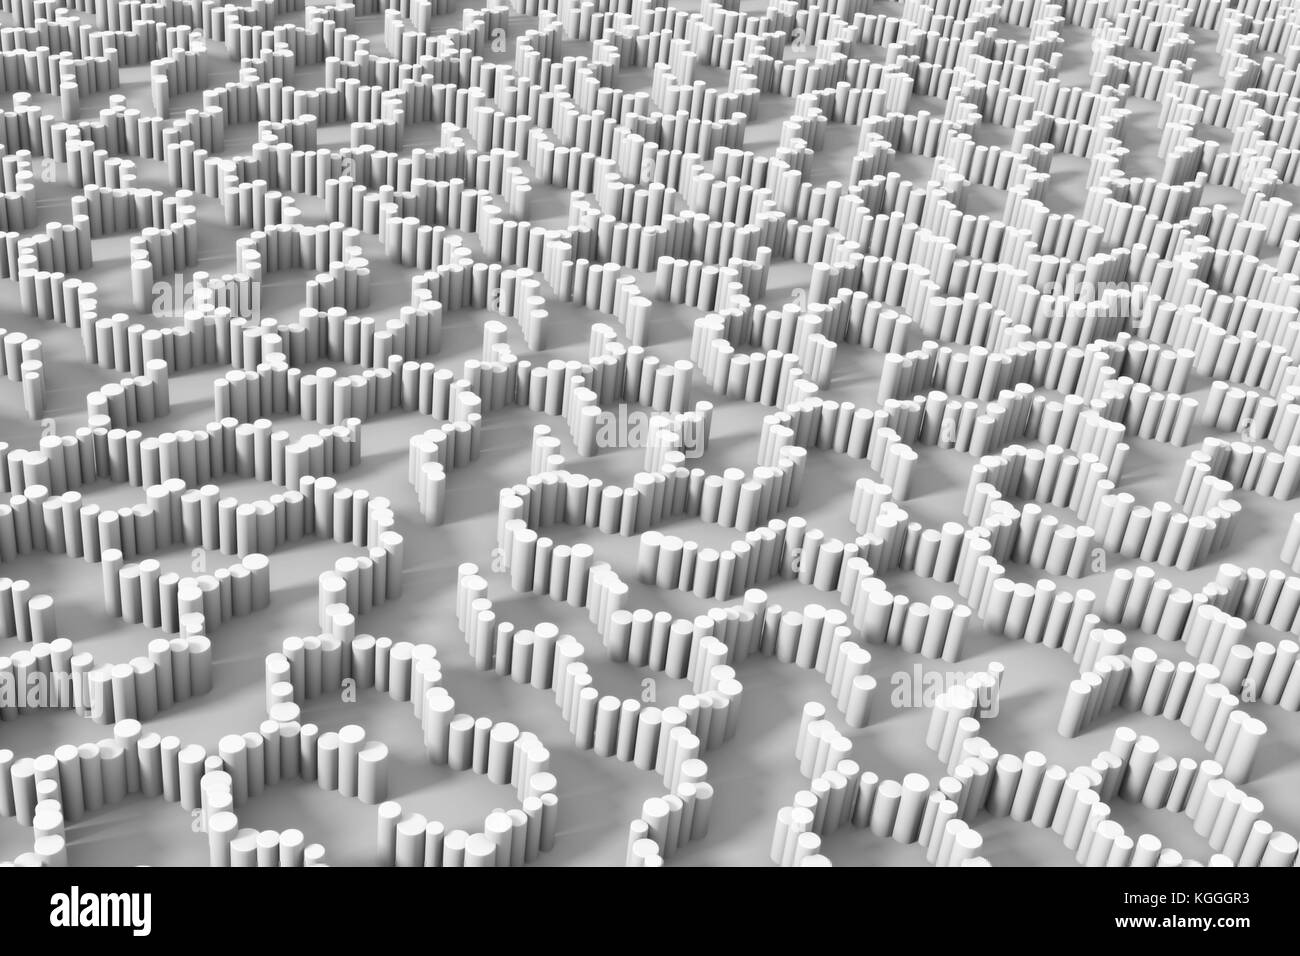 De nombreuses colonnes rondes formant une structure inhabituelle labyrinthe hexagonale en tons de gris (illustration 3d) Banque D'Images